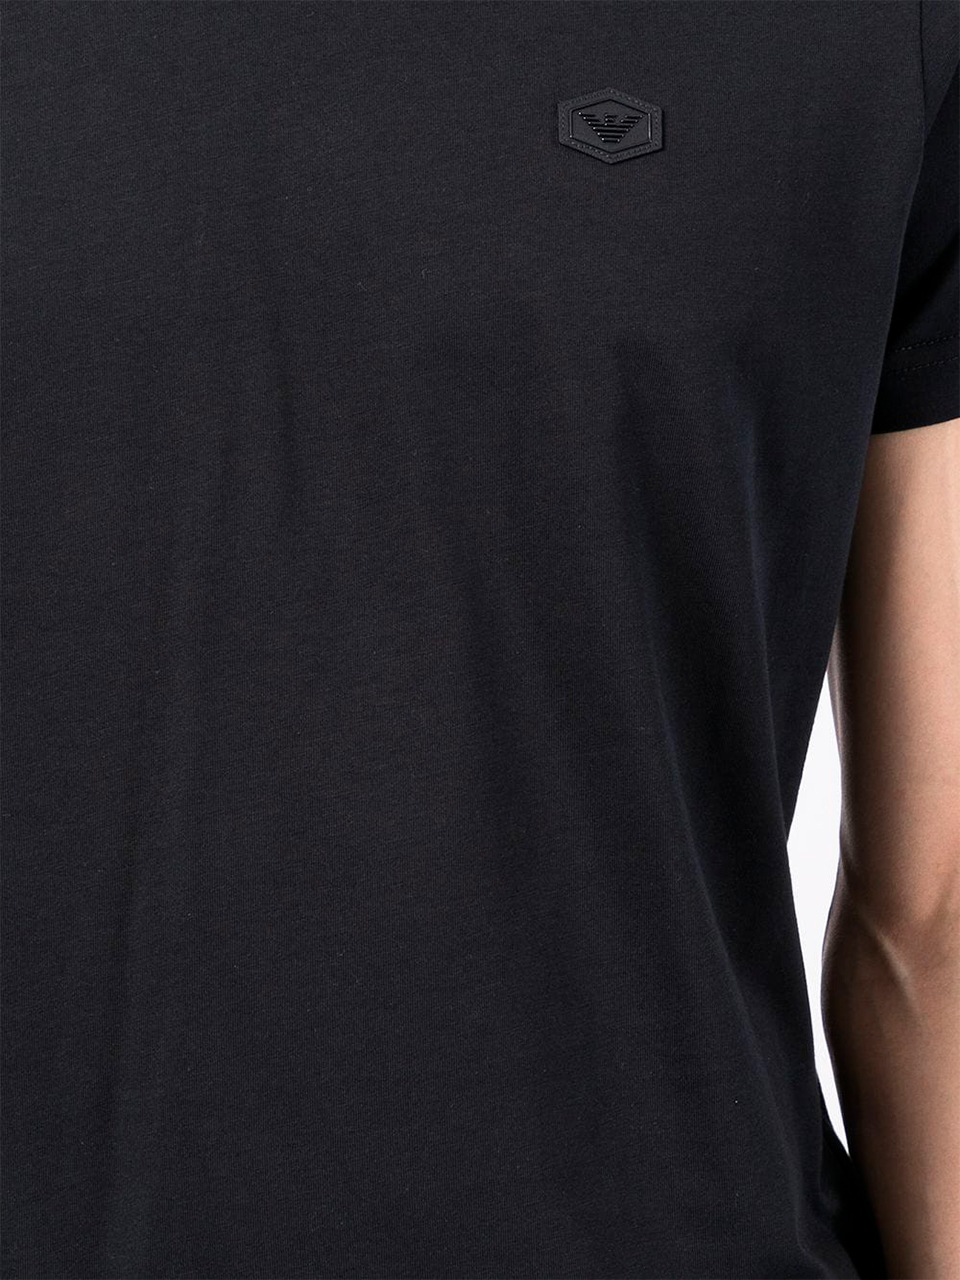 Imagem de: Camiseta Emporio Armani Preta com Logo Patch